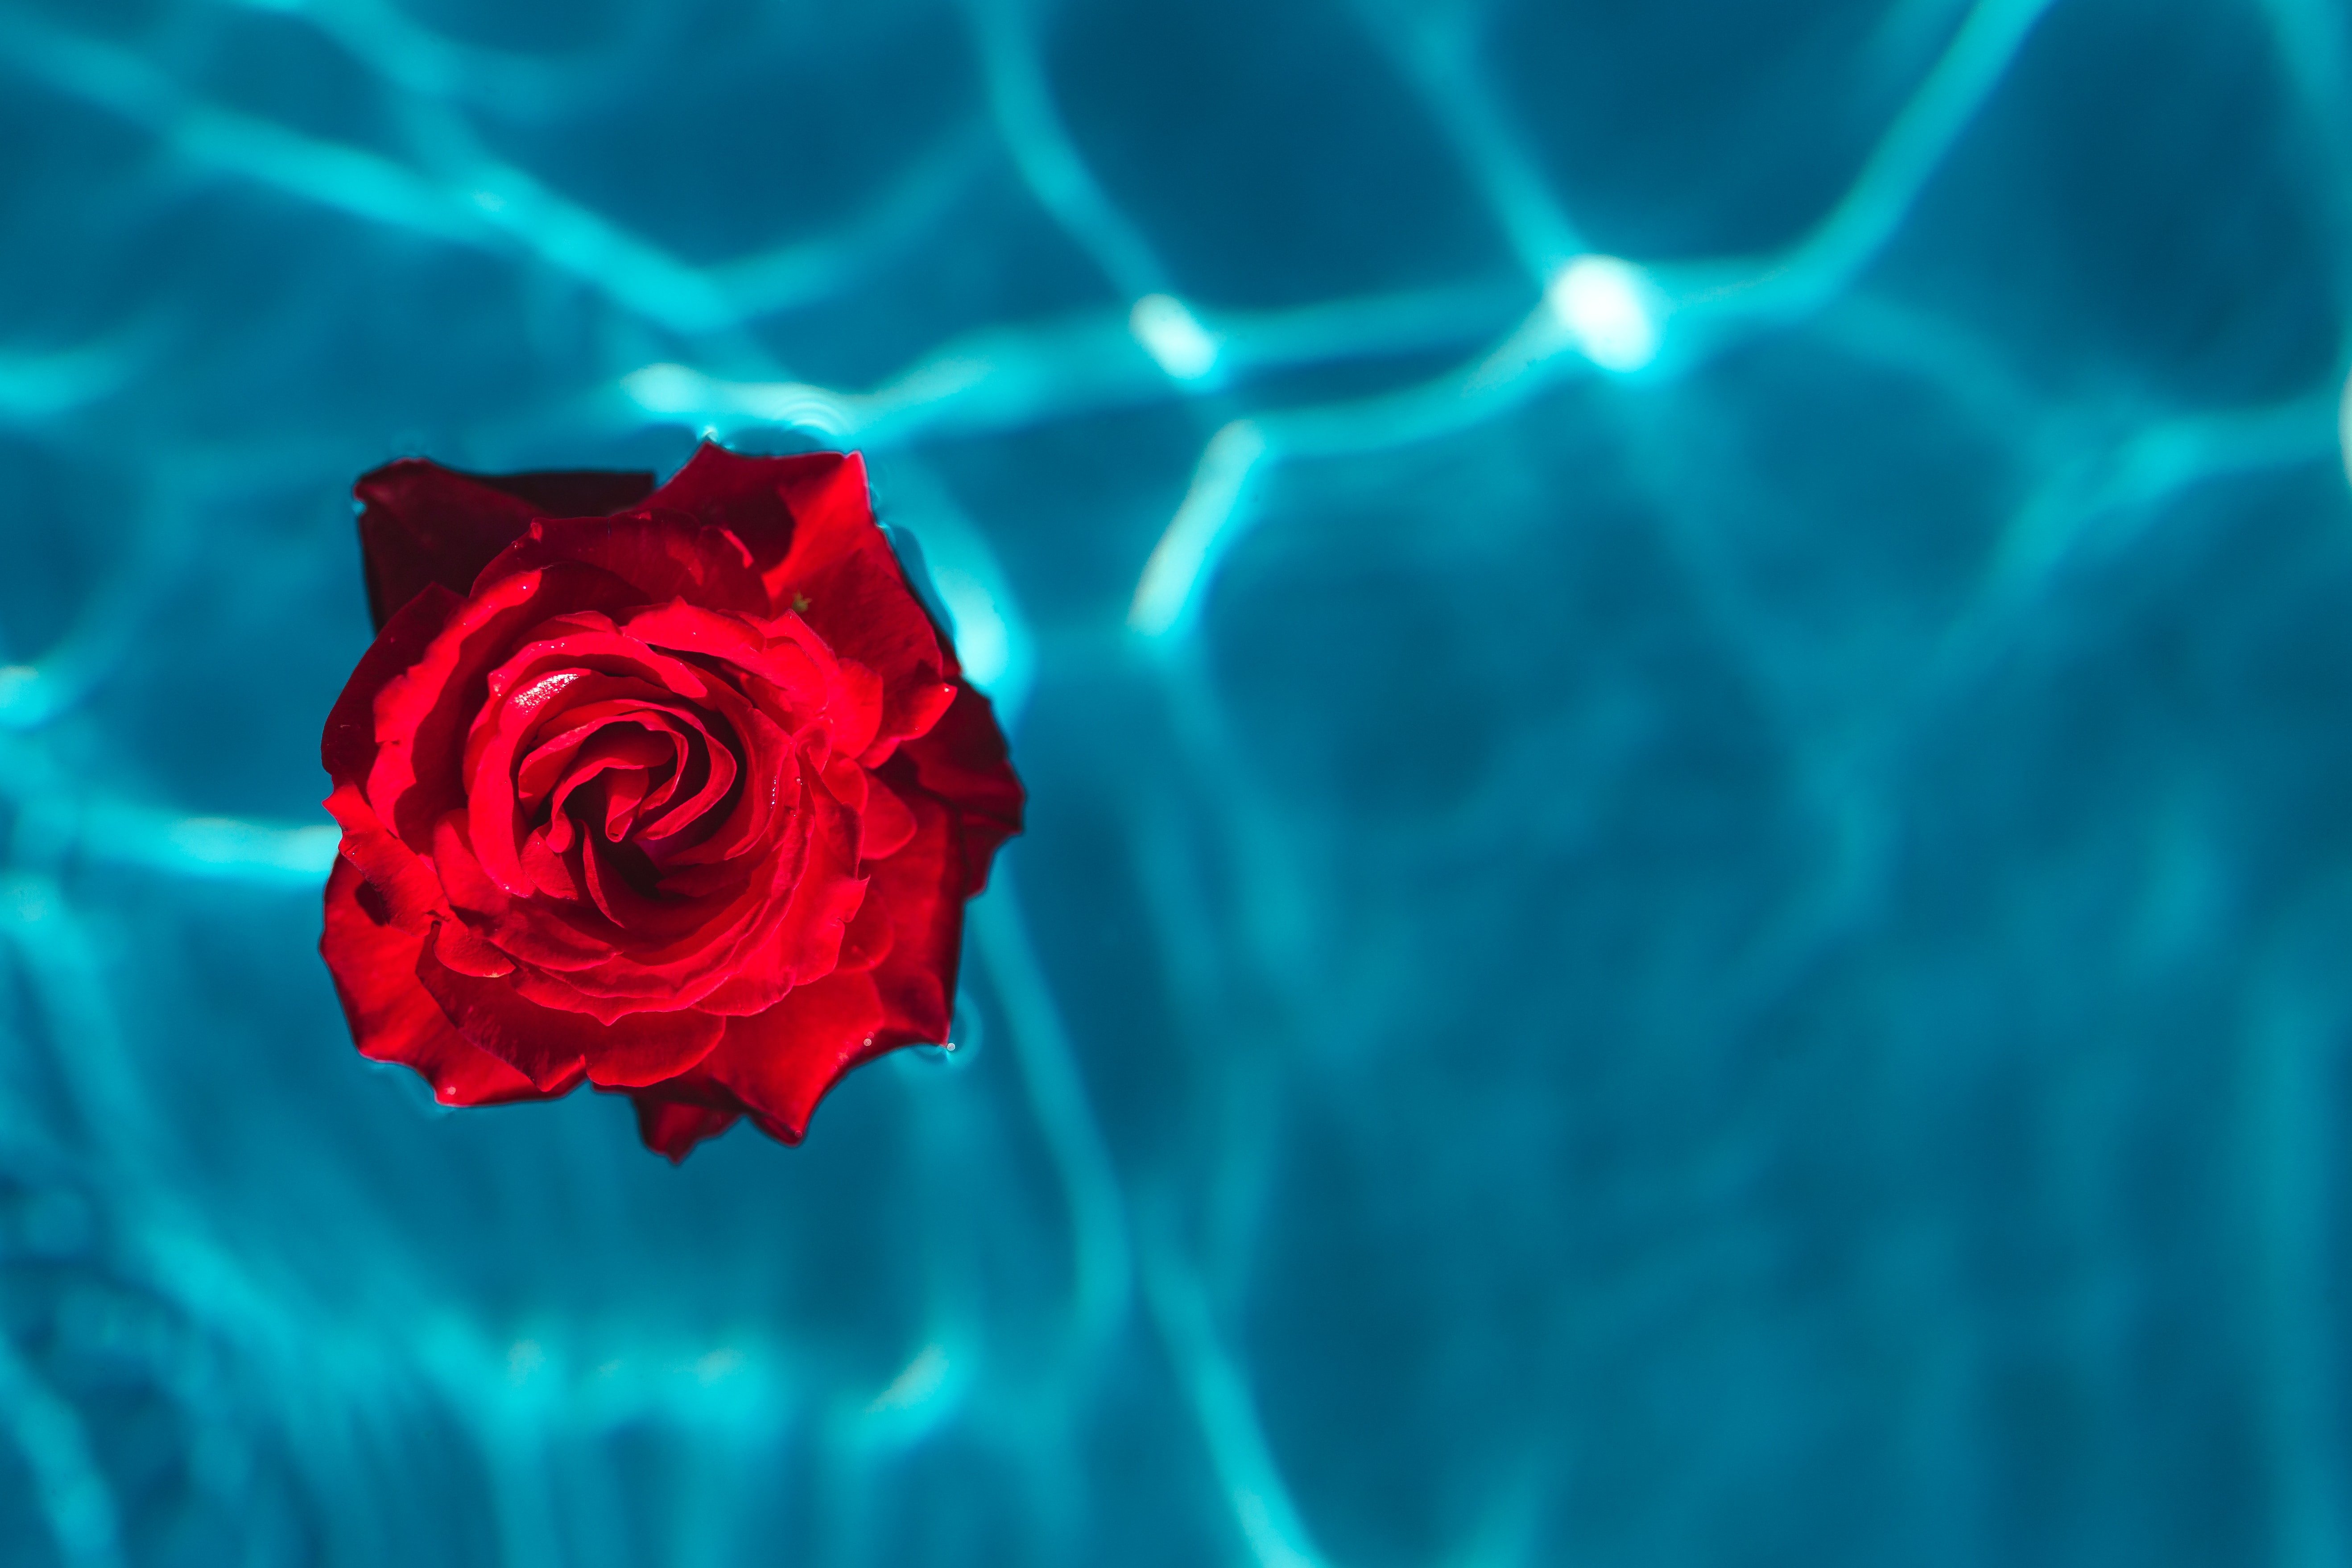 Free download wallpaper Bud, Rose, Water, Rose Flower, Minimalism on your PC desktop